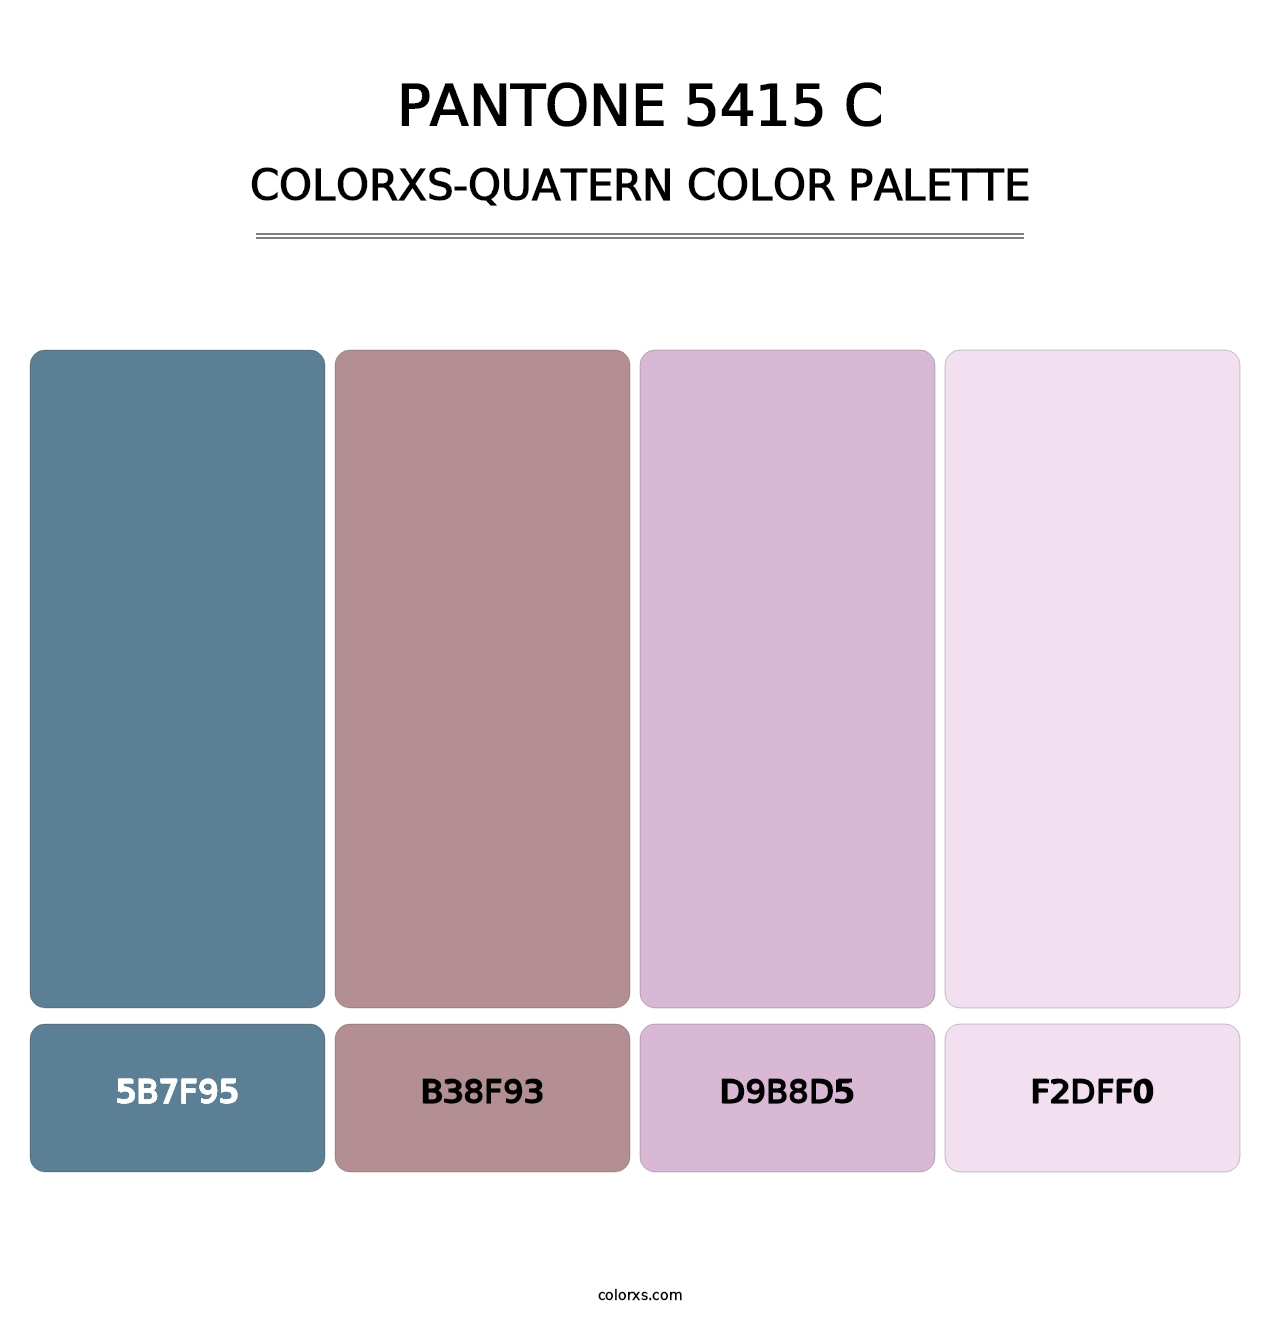 PANTONE 5415 C - Colorxs Quatern Palette